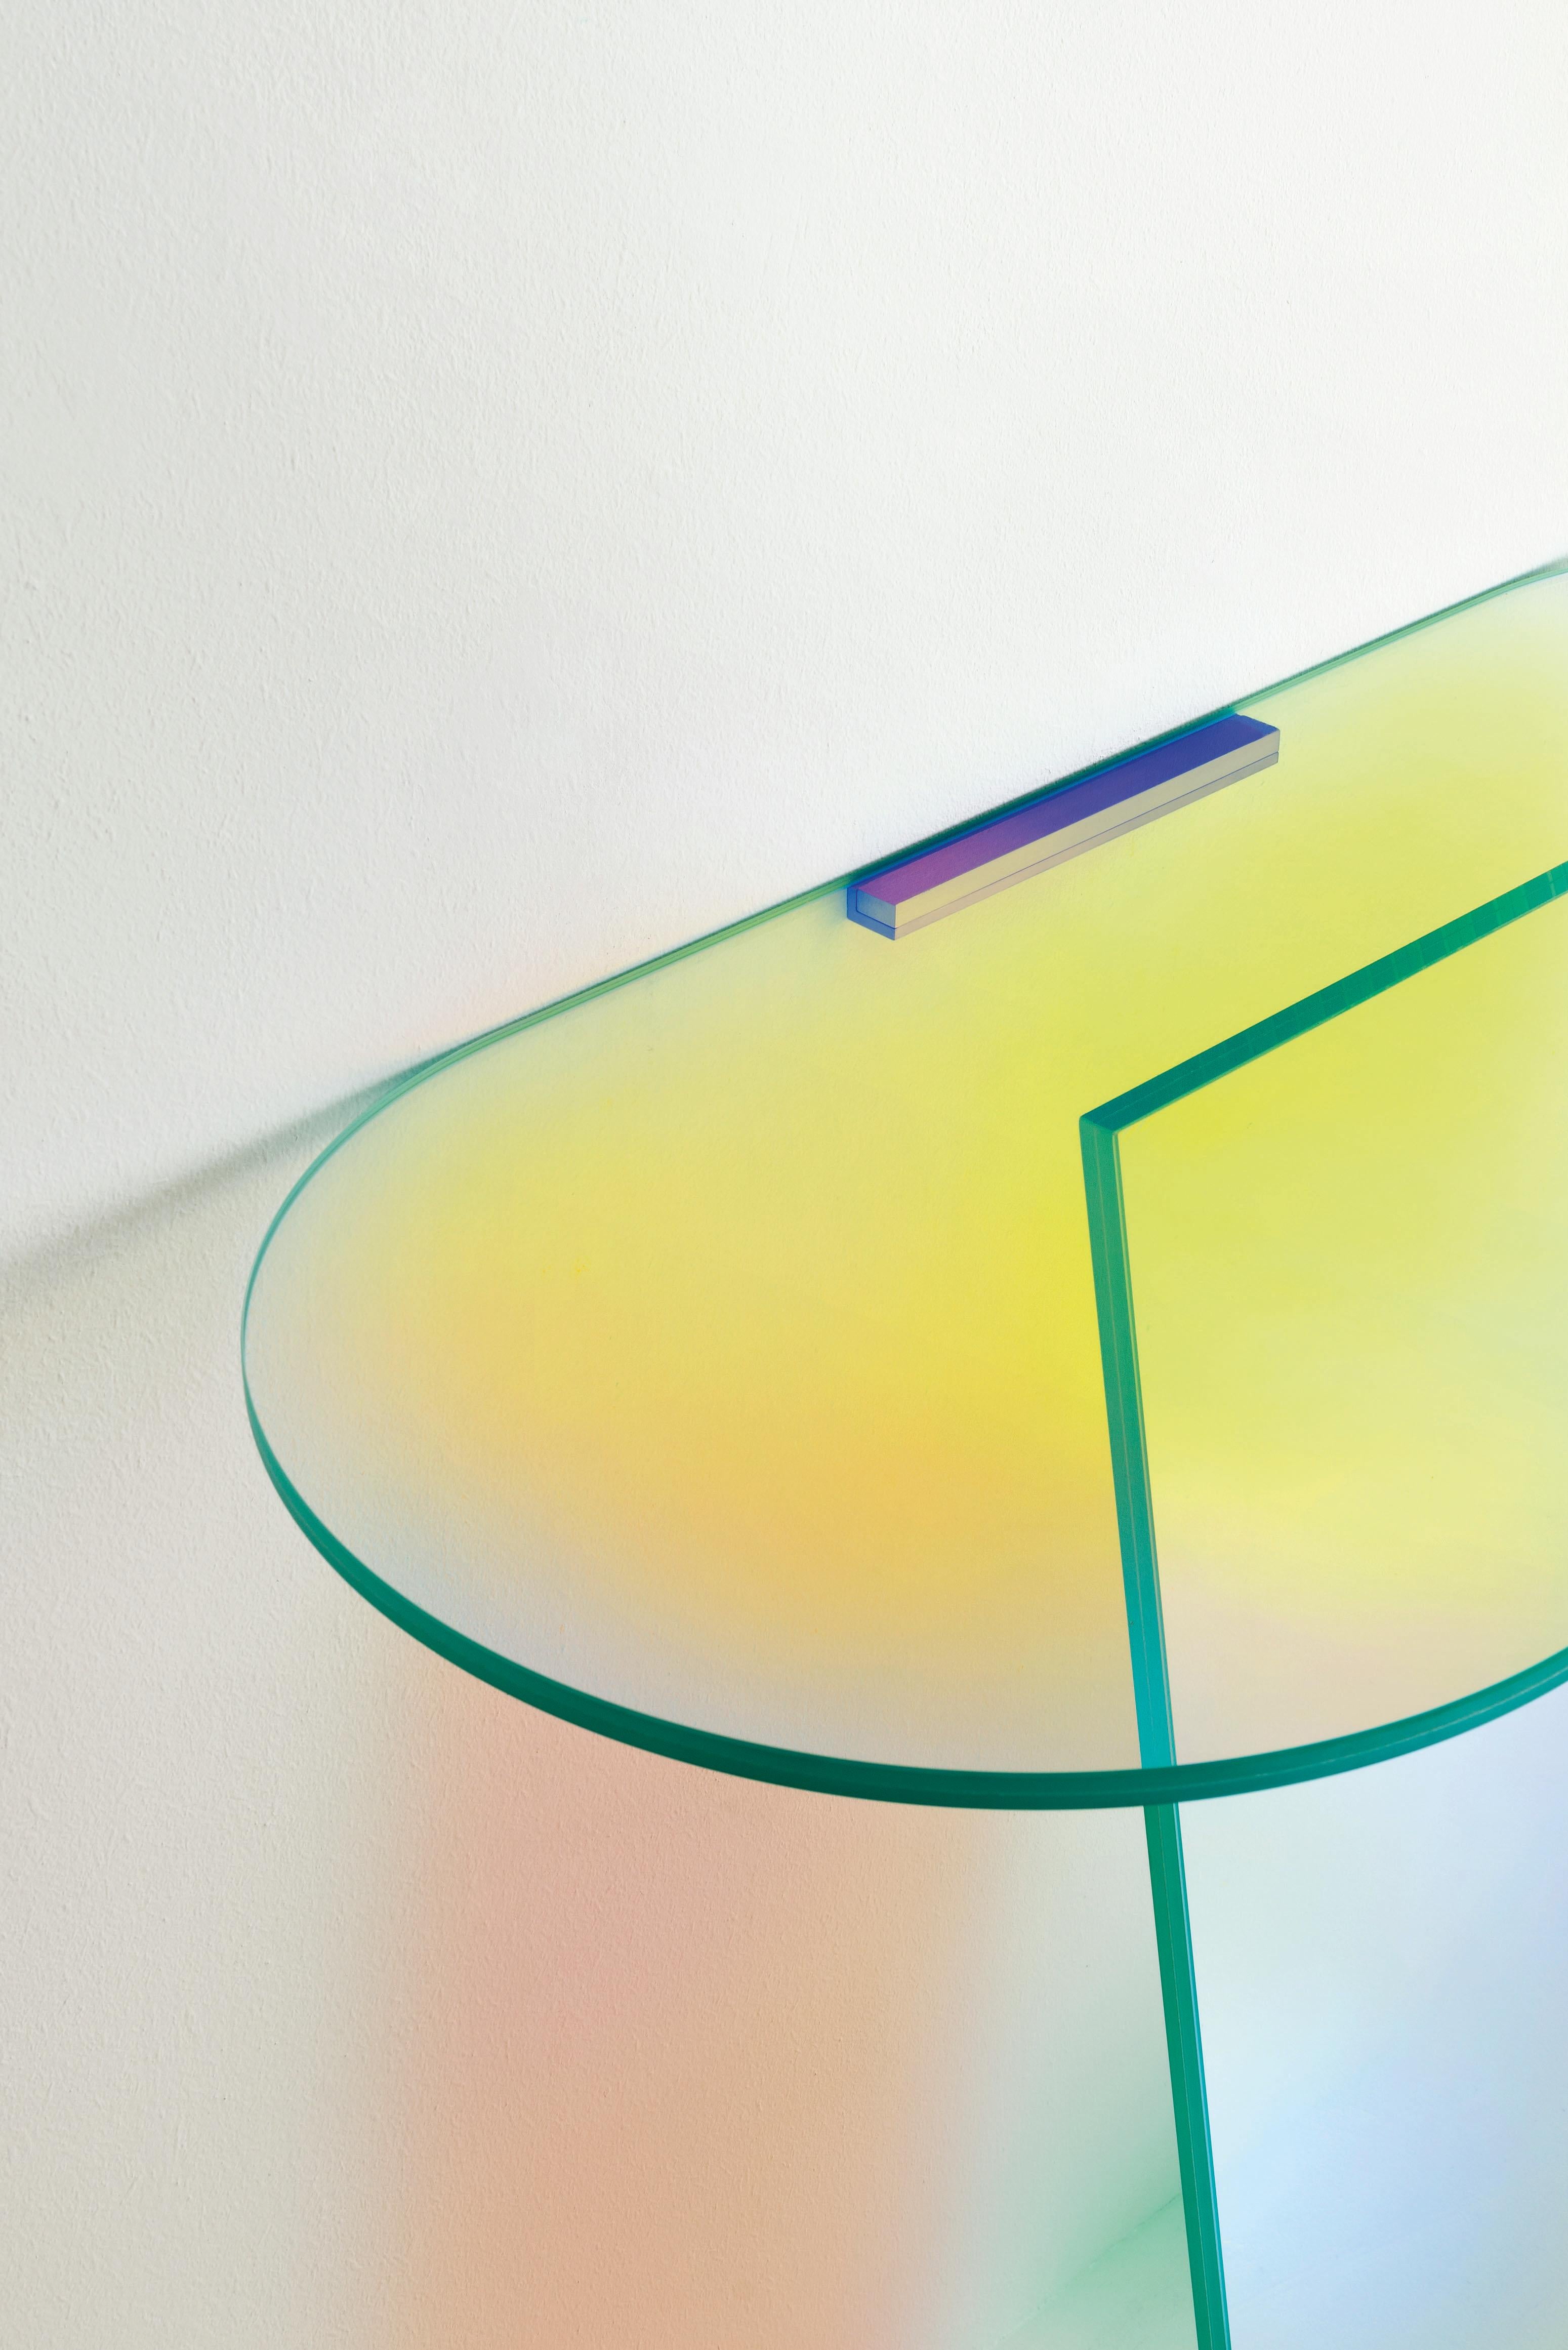 La table console Shimmer est présentée ici en verre laminé et collé. La collection se décline en tables hautes, tables basses et consoles en verre laminé et collé, caractérisées par une finition multichromatique irisée spéciale ; la nuance varie en